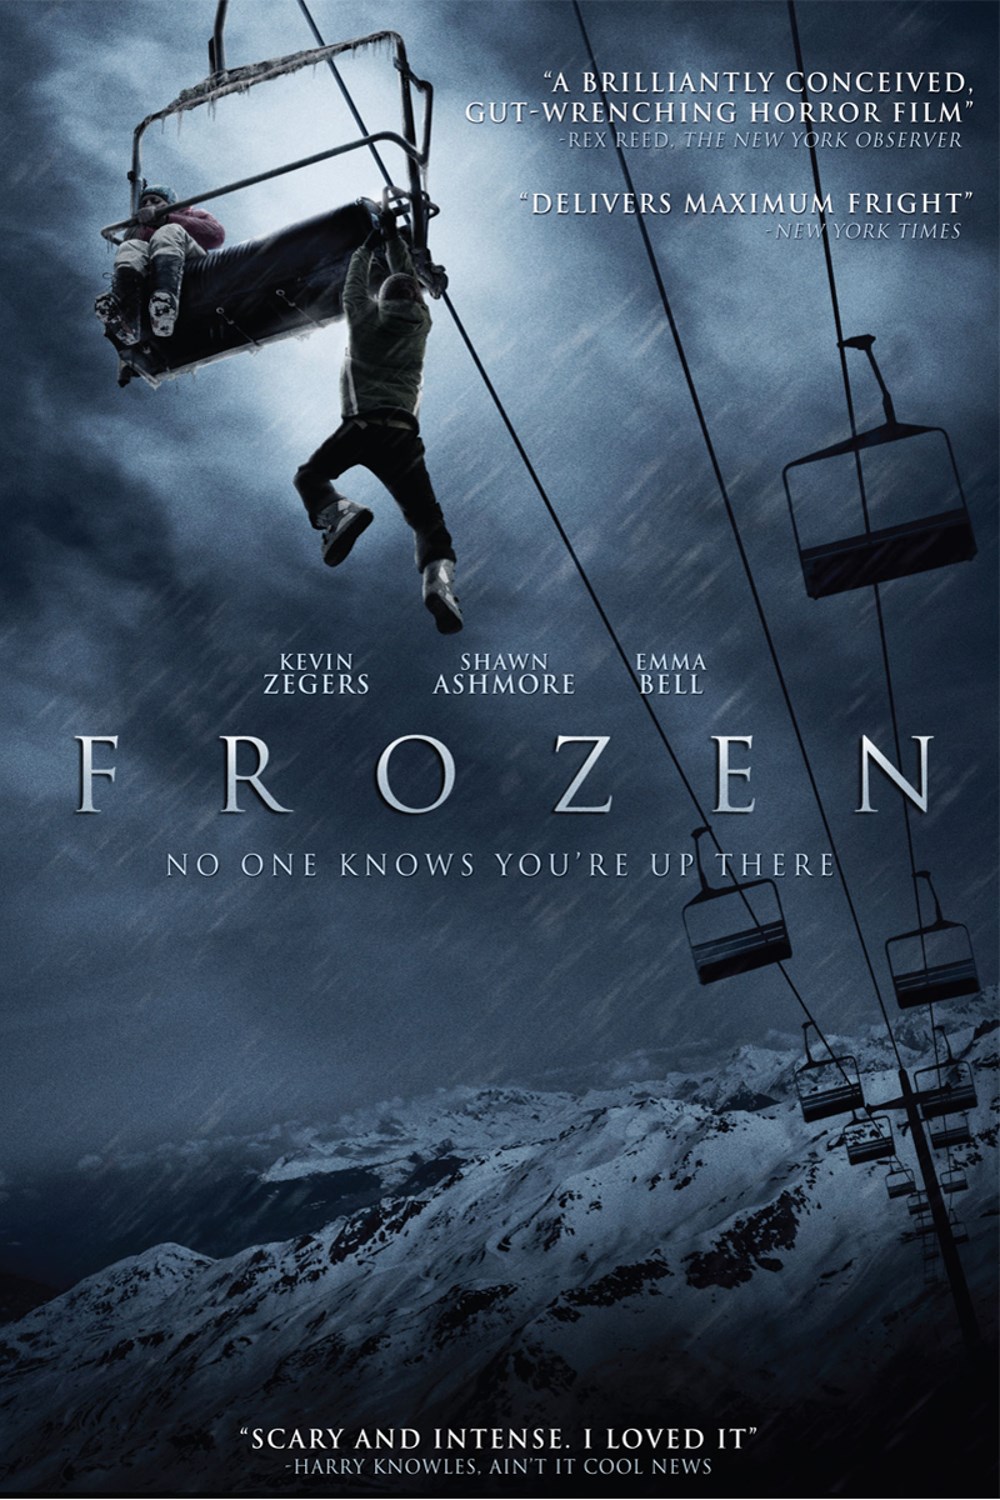 2010 Frozen